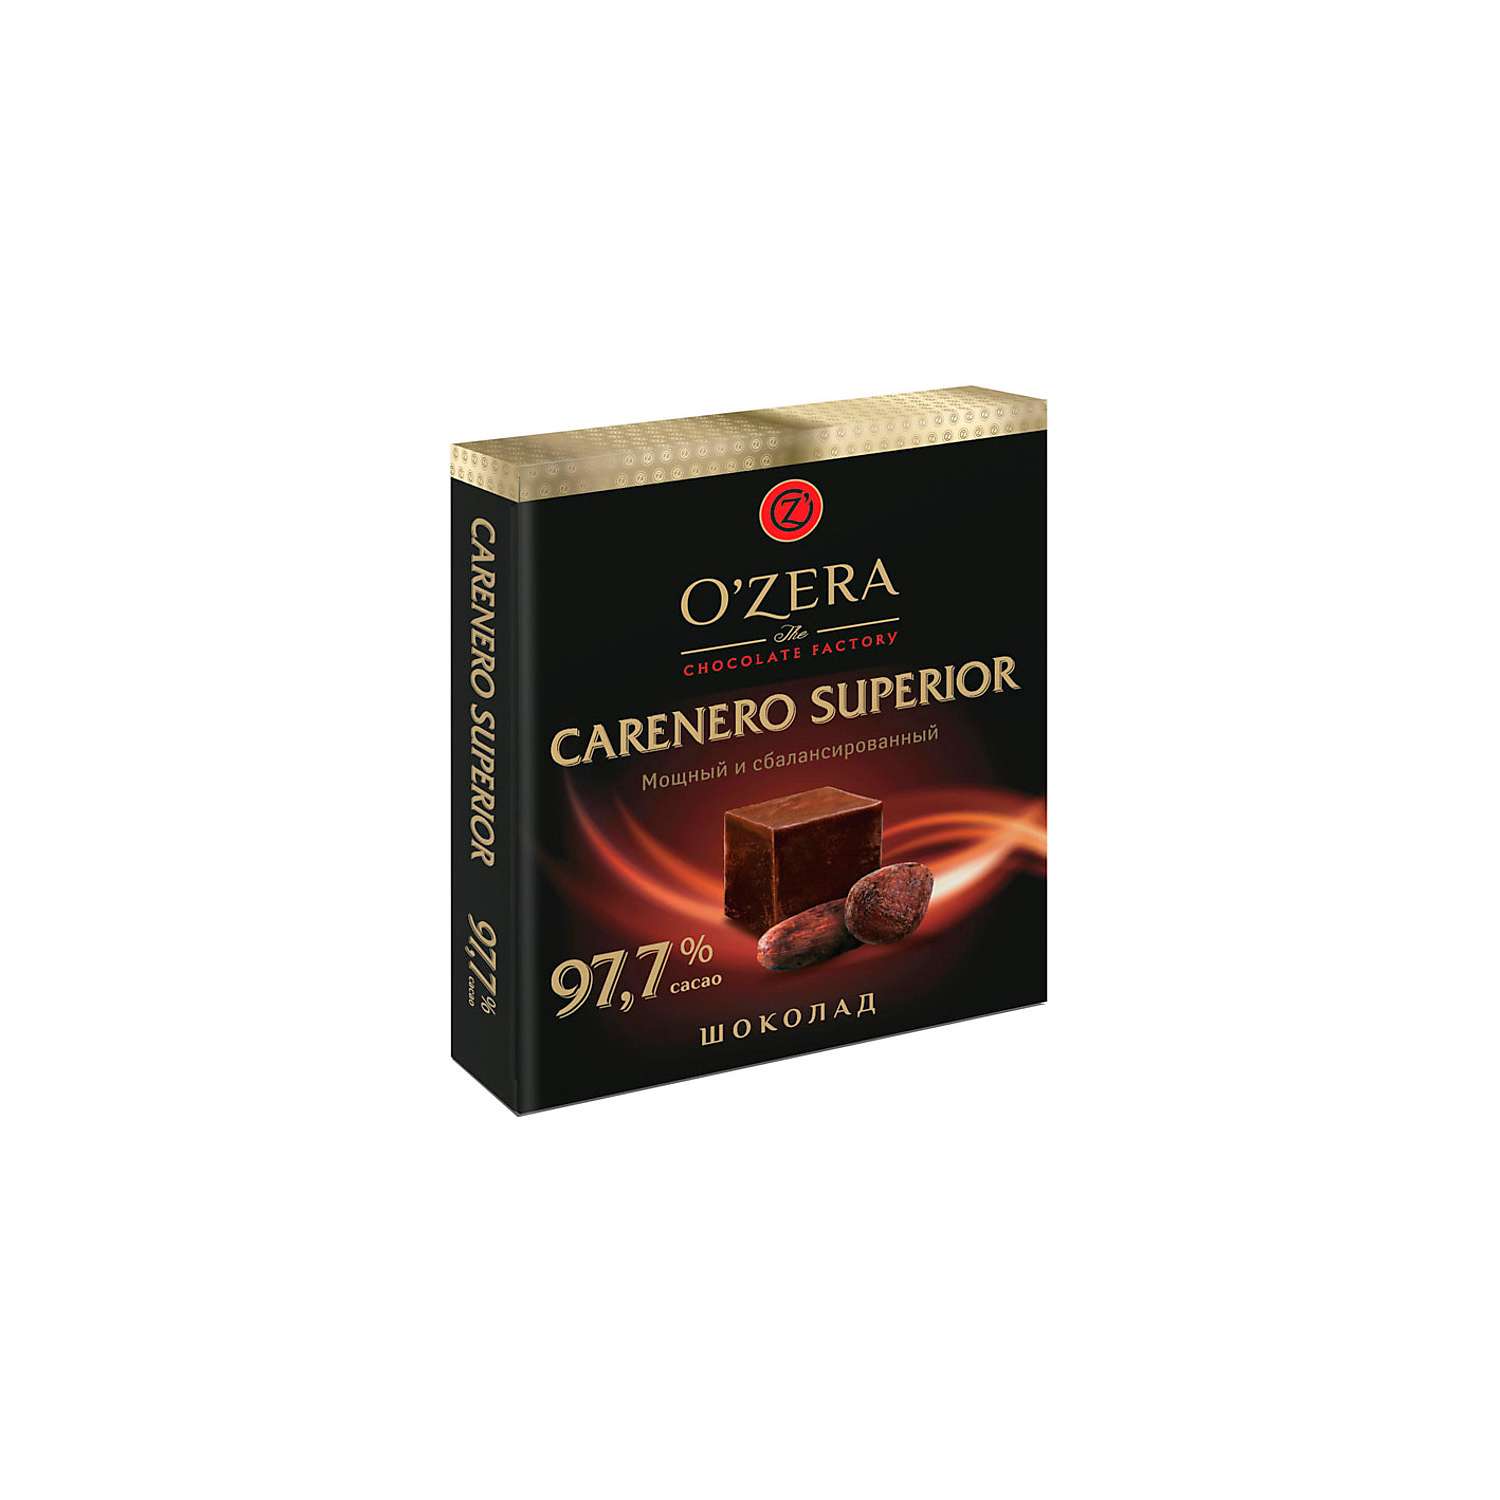 Шоколад OZera Carenero Superior содержание какао 97.7% 90 г 4 шт - фото 2